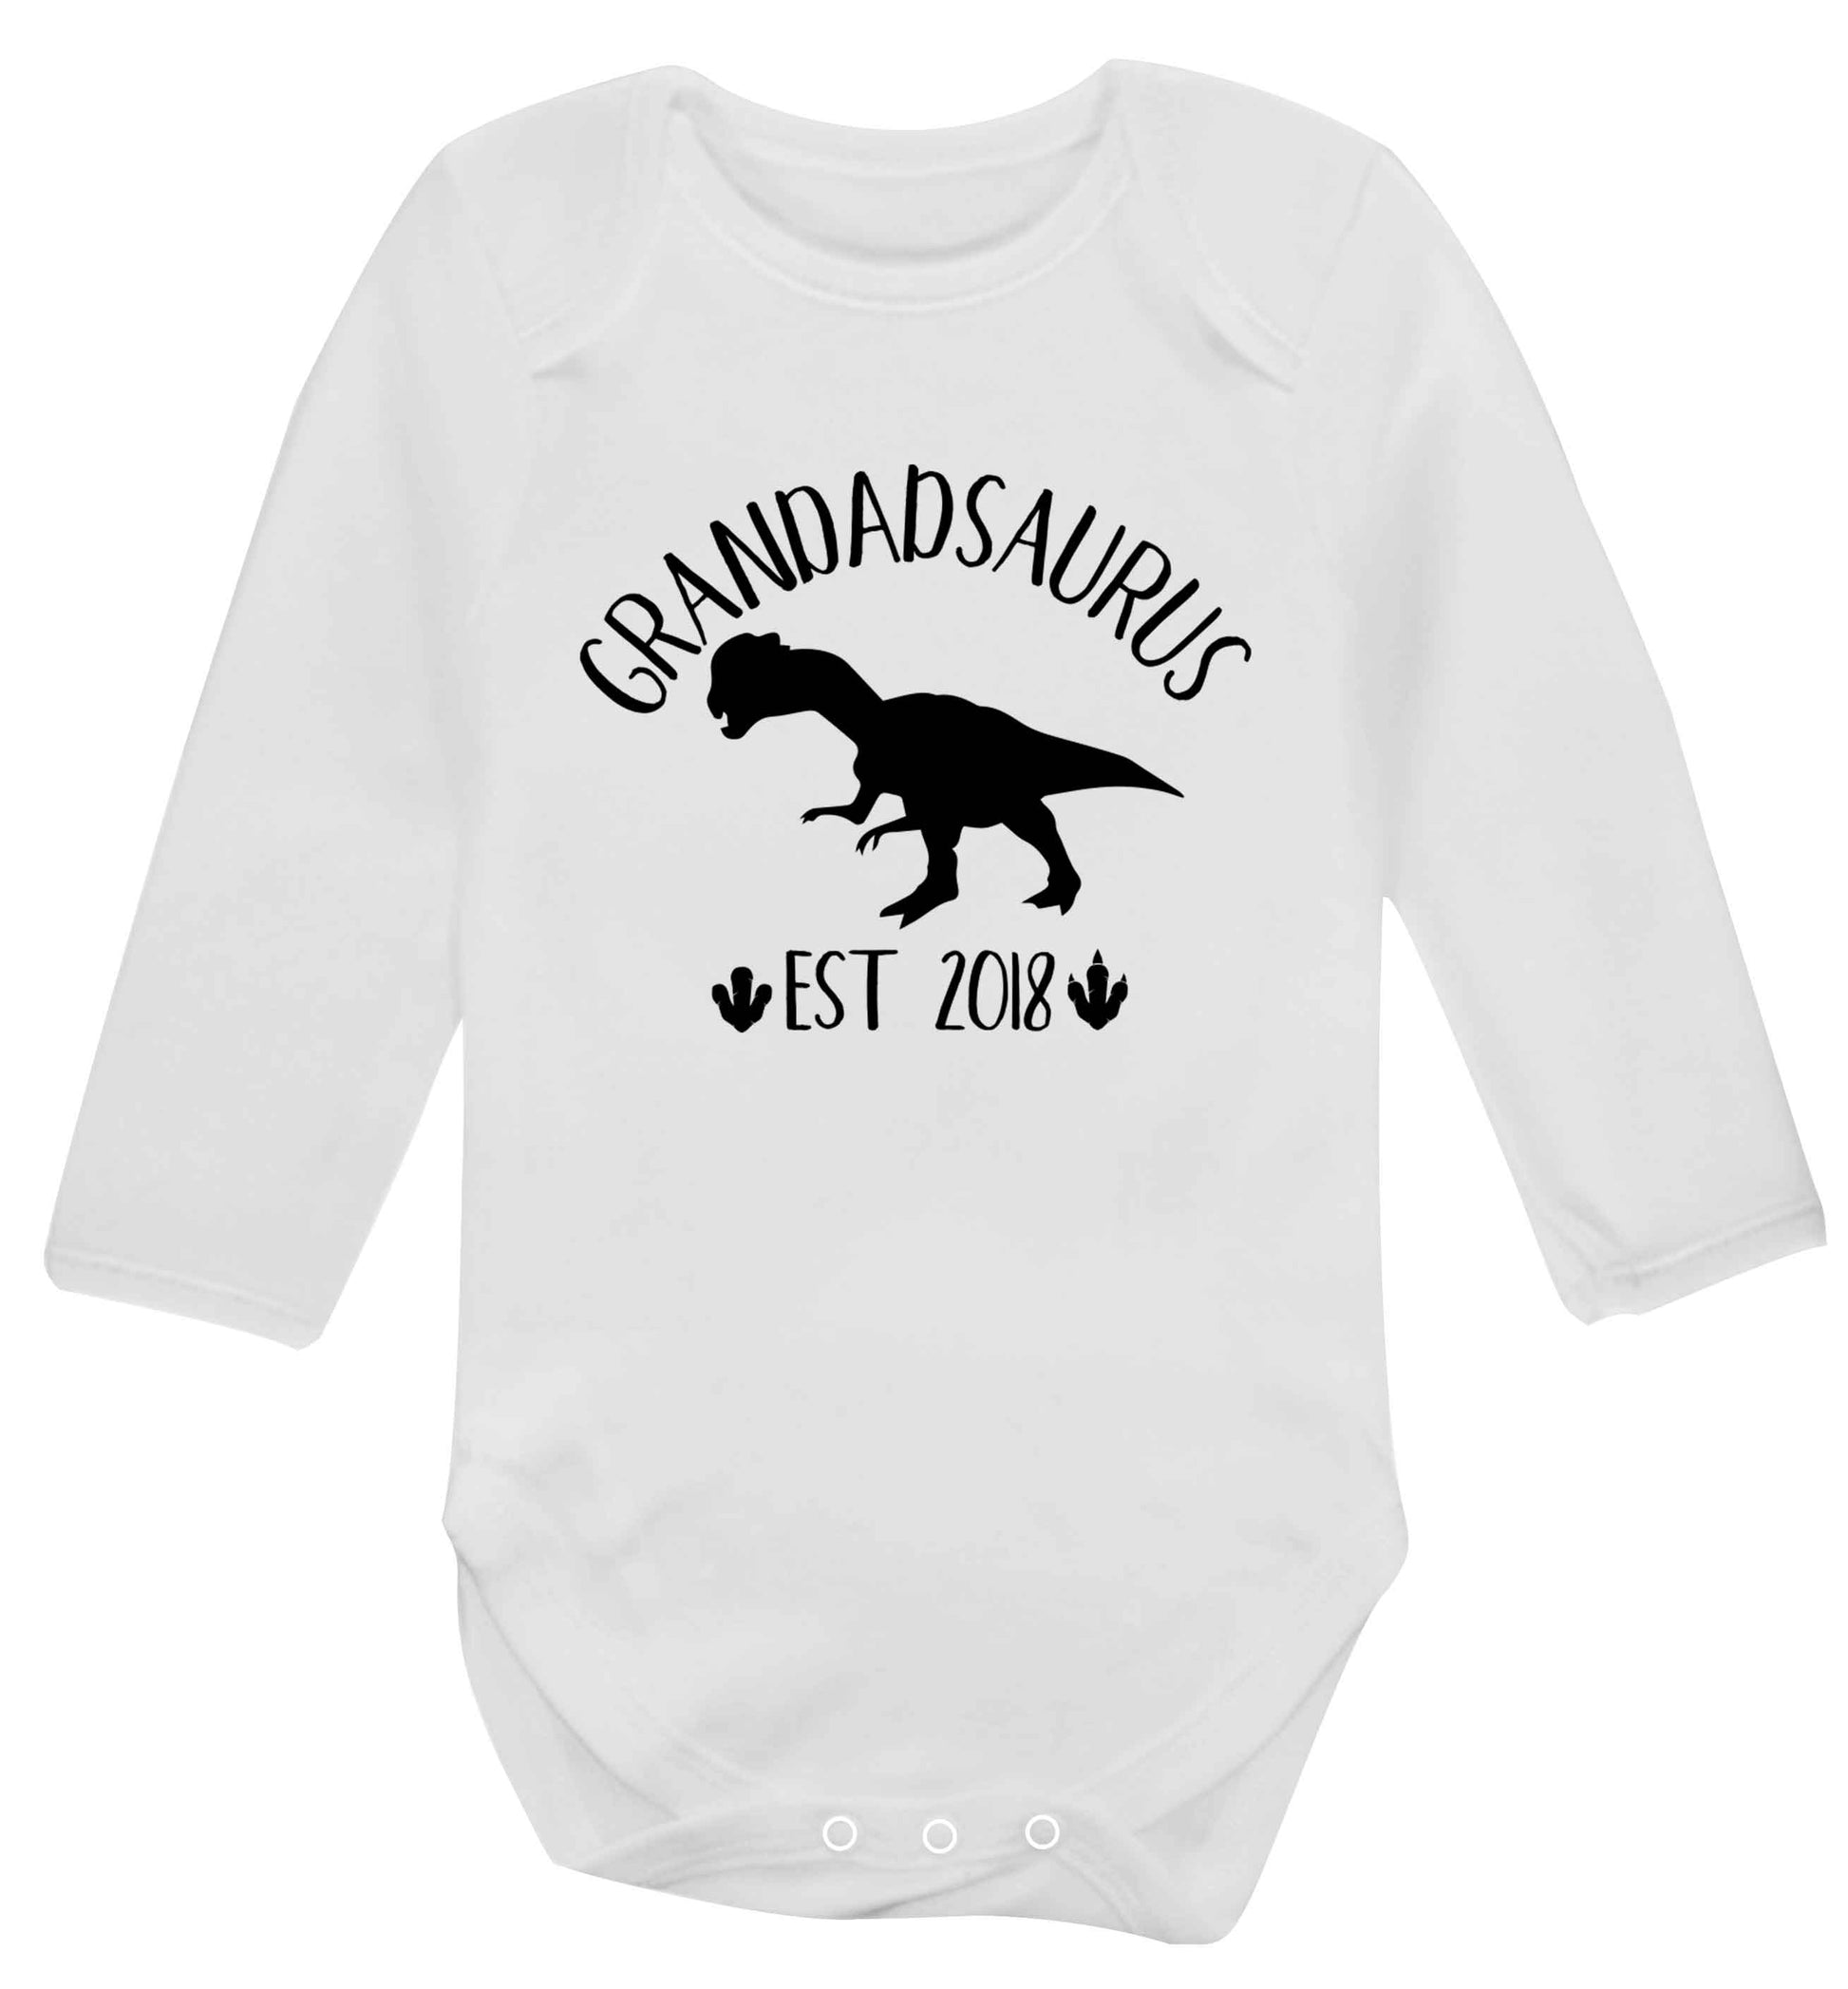 Personalised grandadsaurus since (custom date) Baby Vest long sleeved white 6-12 months